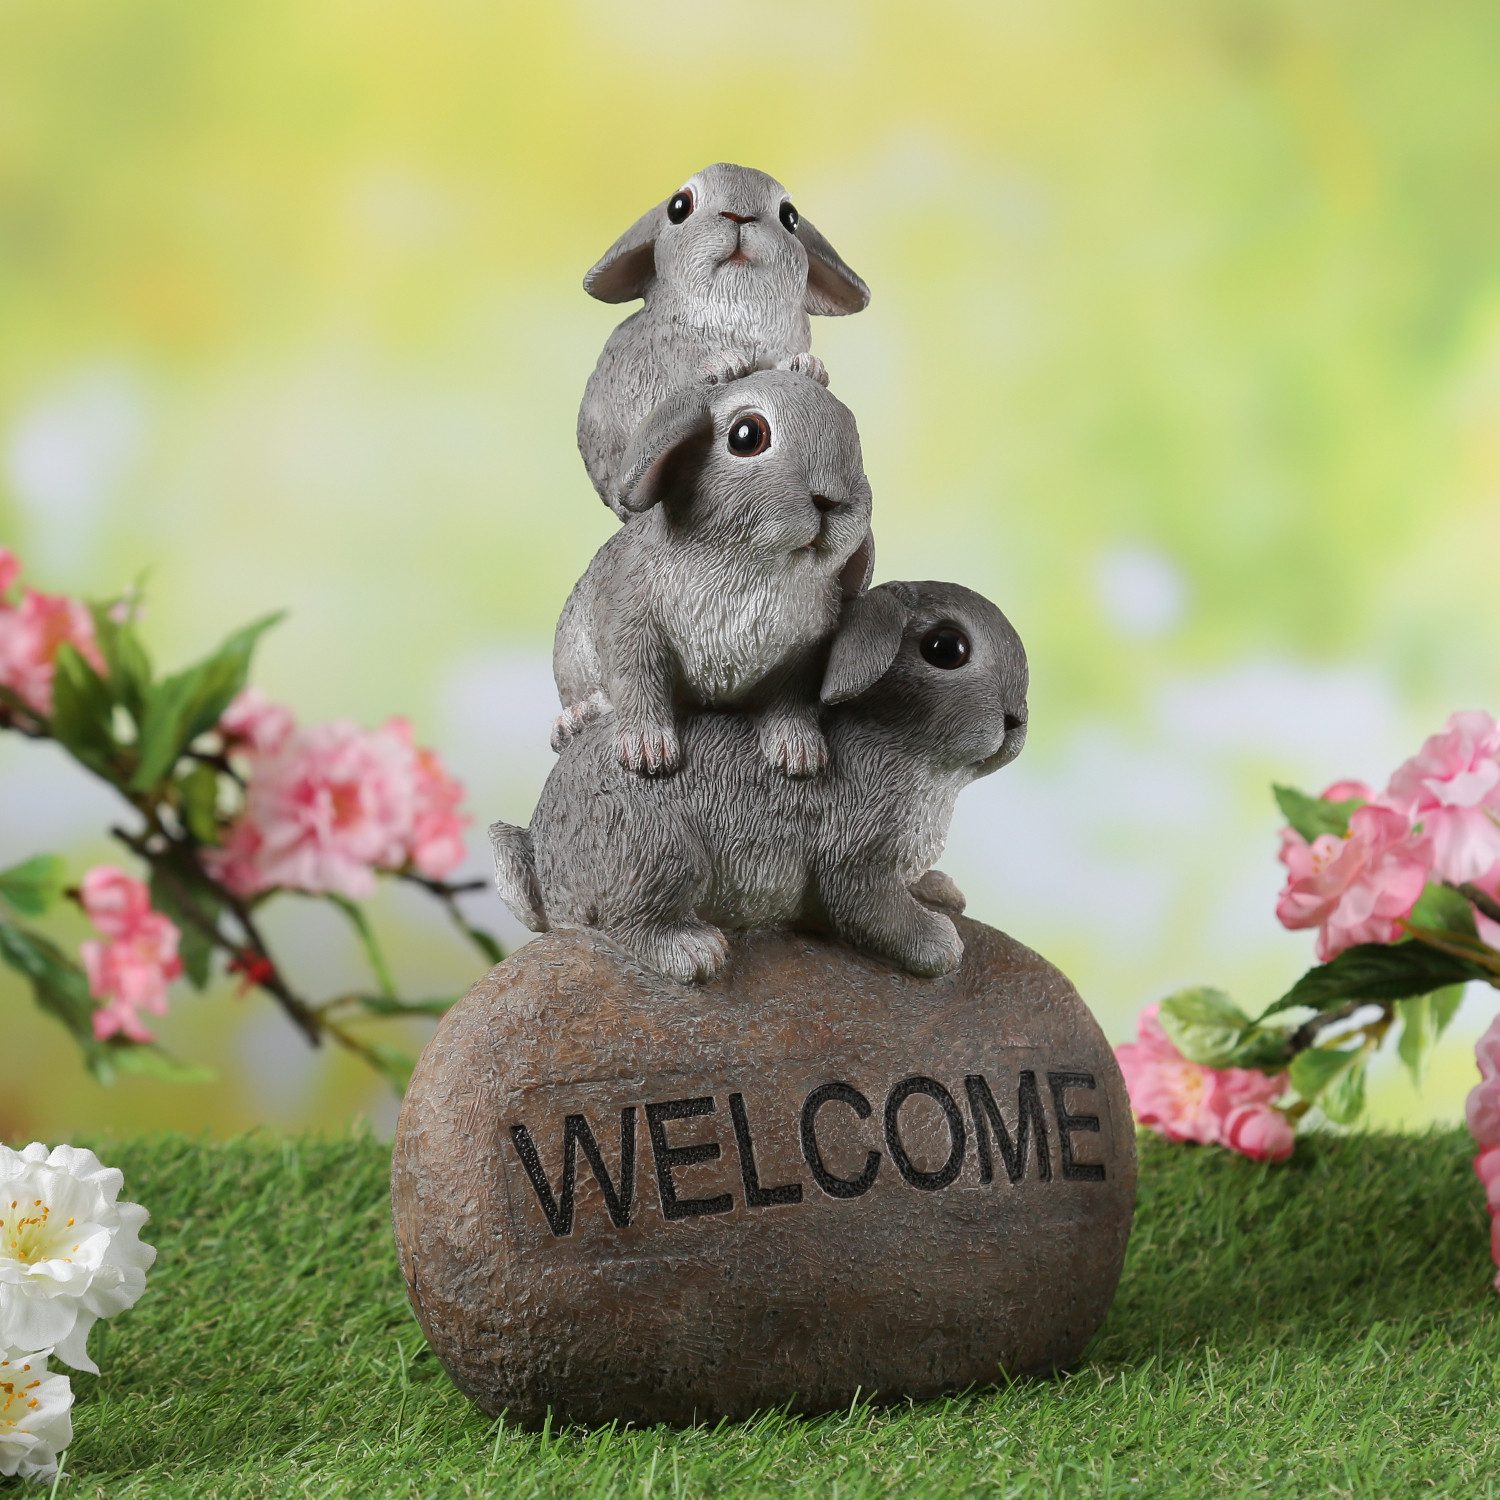 MARELIDA Gartenfigur Dekofigur Welcome 3 Hasen auf Stein Frühling Ostern Eingangsdeko